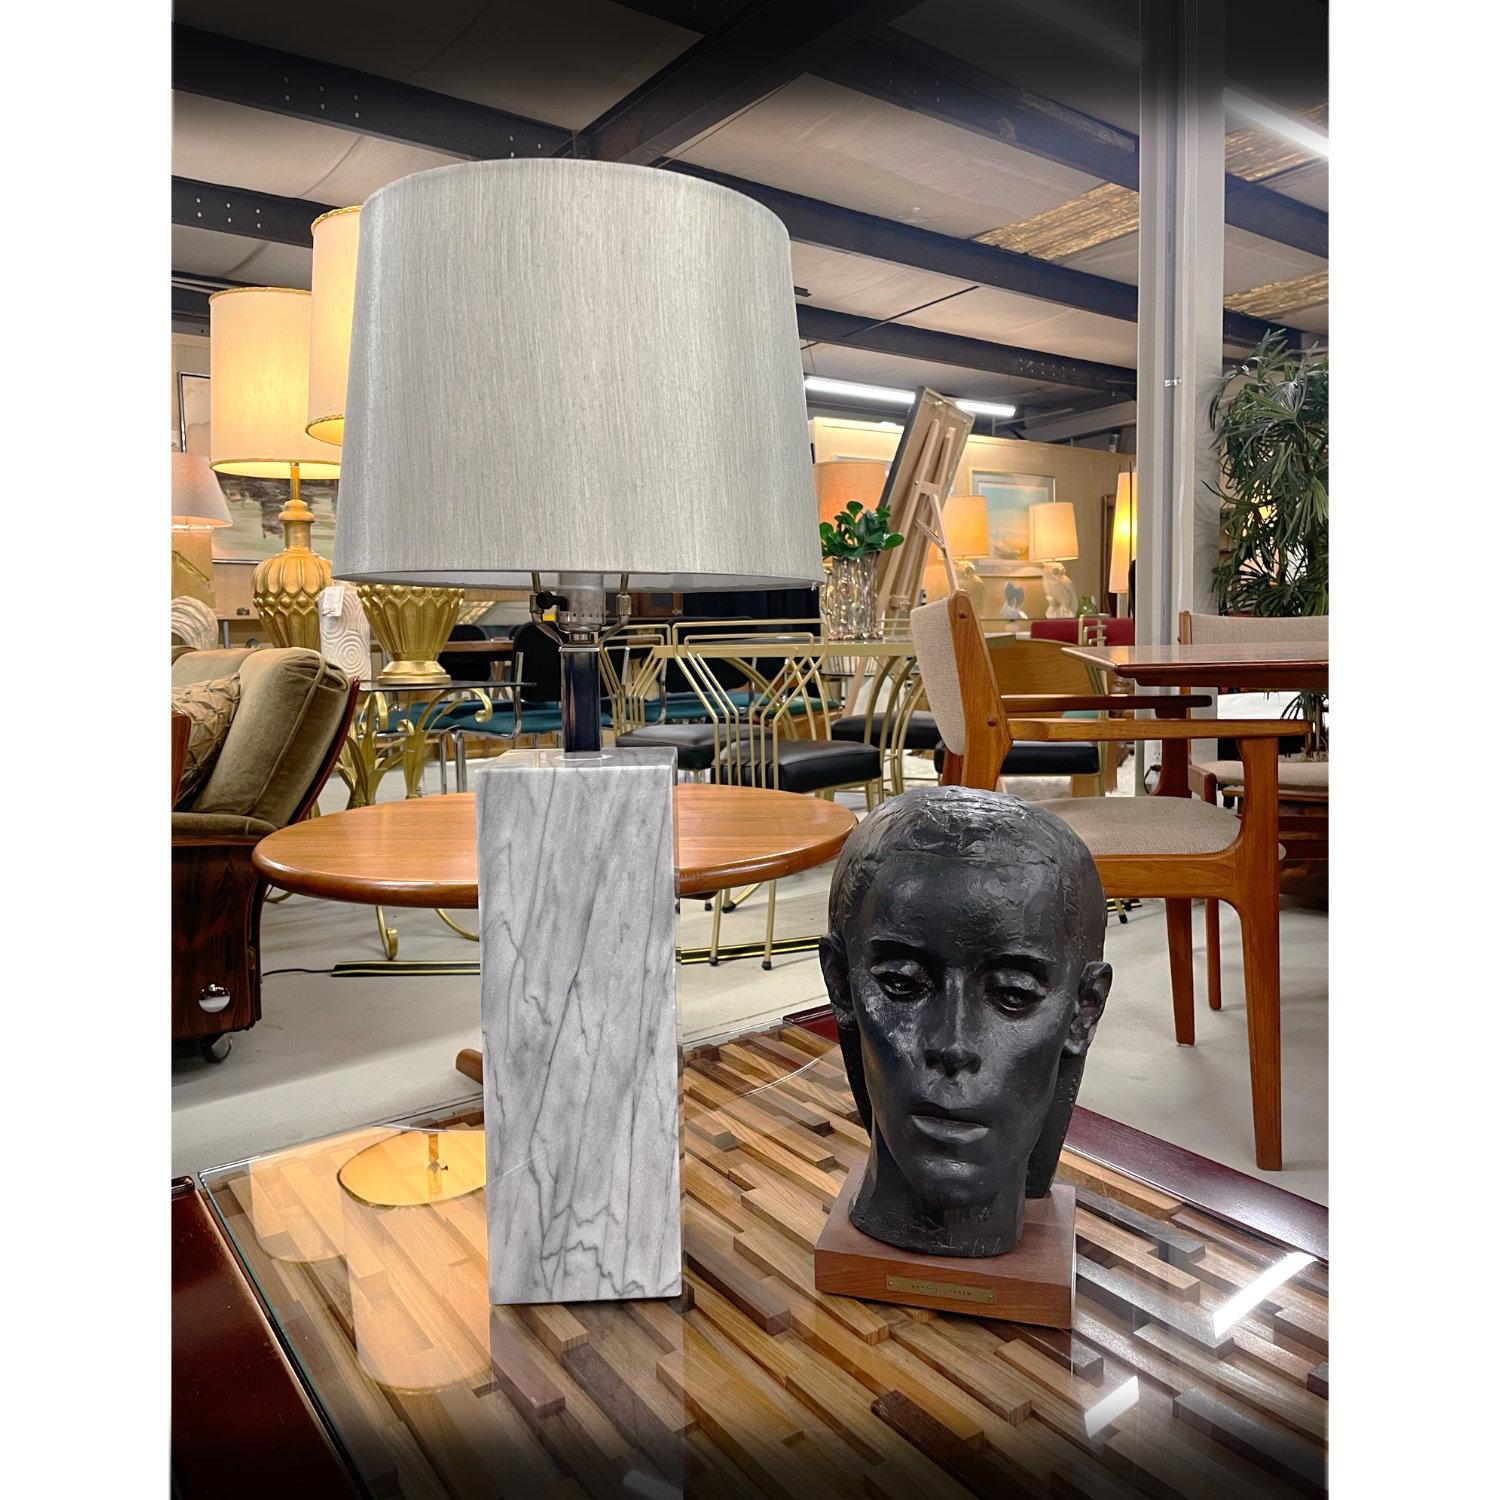 Der Lampenschirm ist beim Kauf NICHT enthalten.

Schicke Tischleuchte aus grauem Marmor, entworfen nach dem Vorbild von Nessen. Die minimalistische, moderne Leuchte besteht aus einer einzigen quadratischen Säule mit einem verchromten Hals. Die